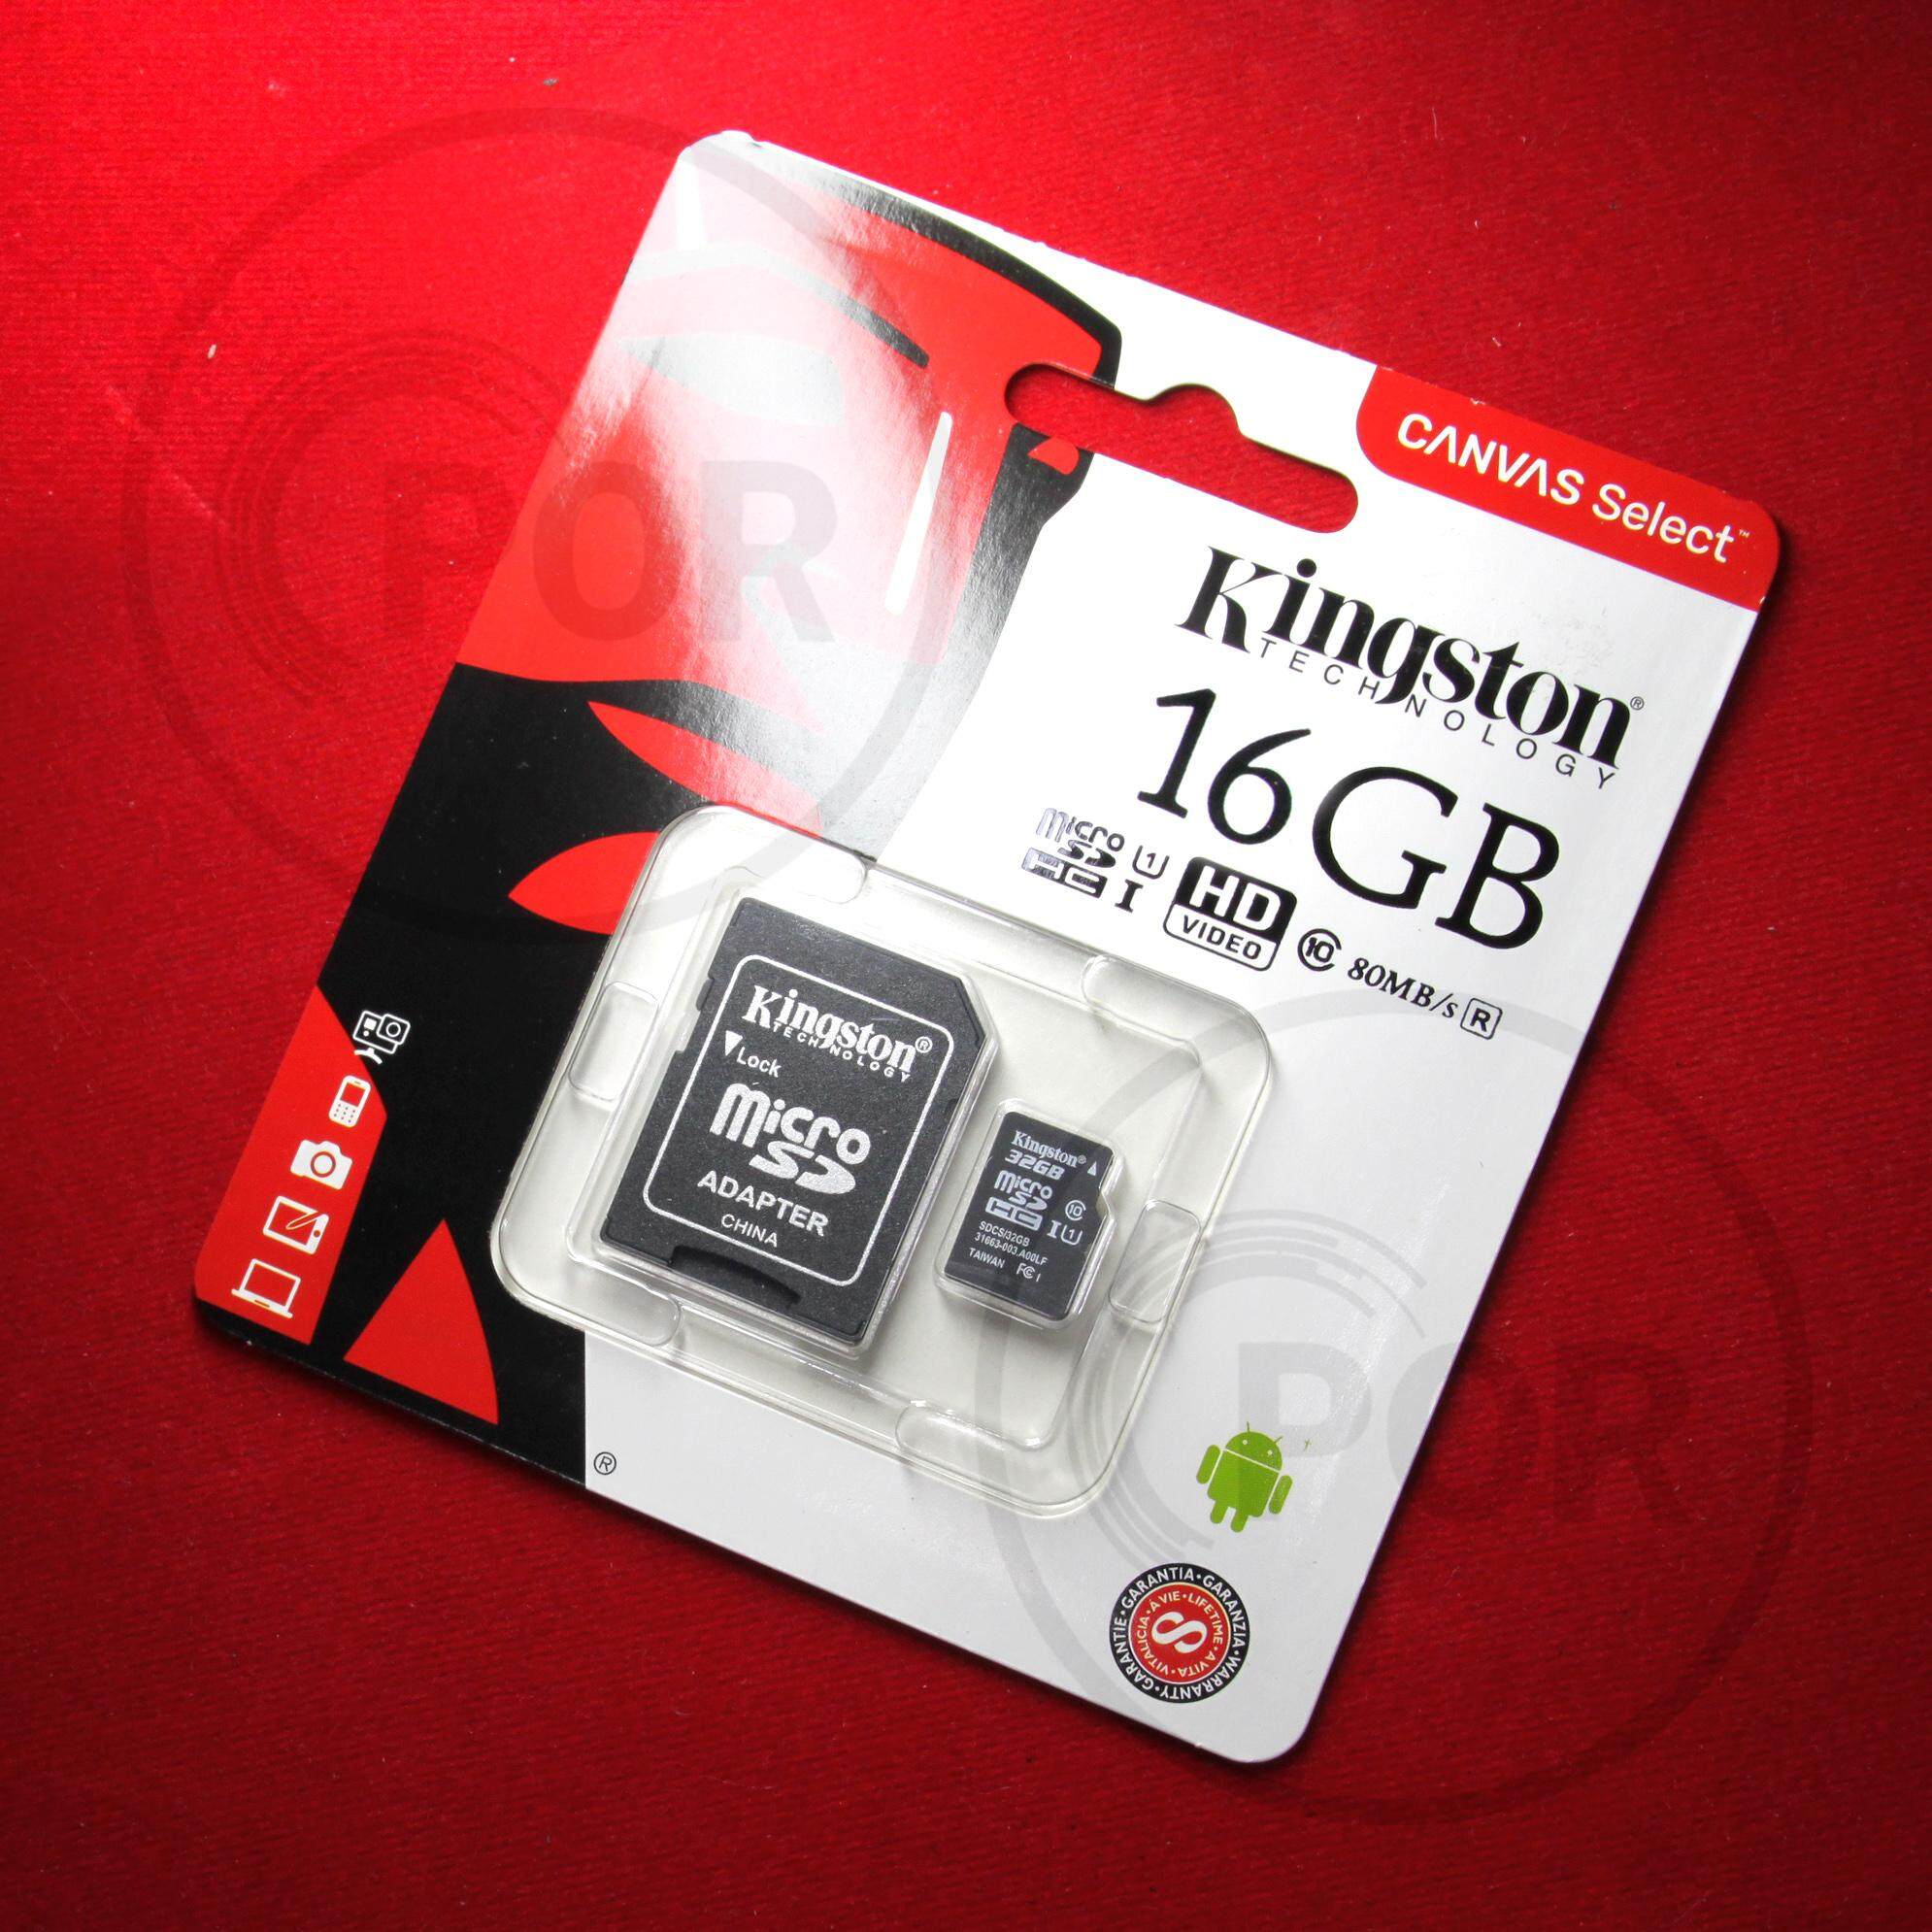 [ของแท้] Kingston เมมโมรี่การ์ด 16GB SDHC/SDXC Class 10 UHS-I Micro SD Card with Adapter  